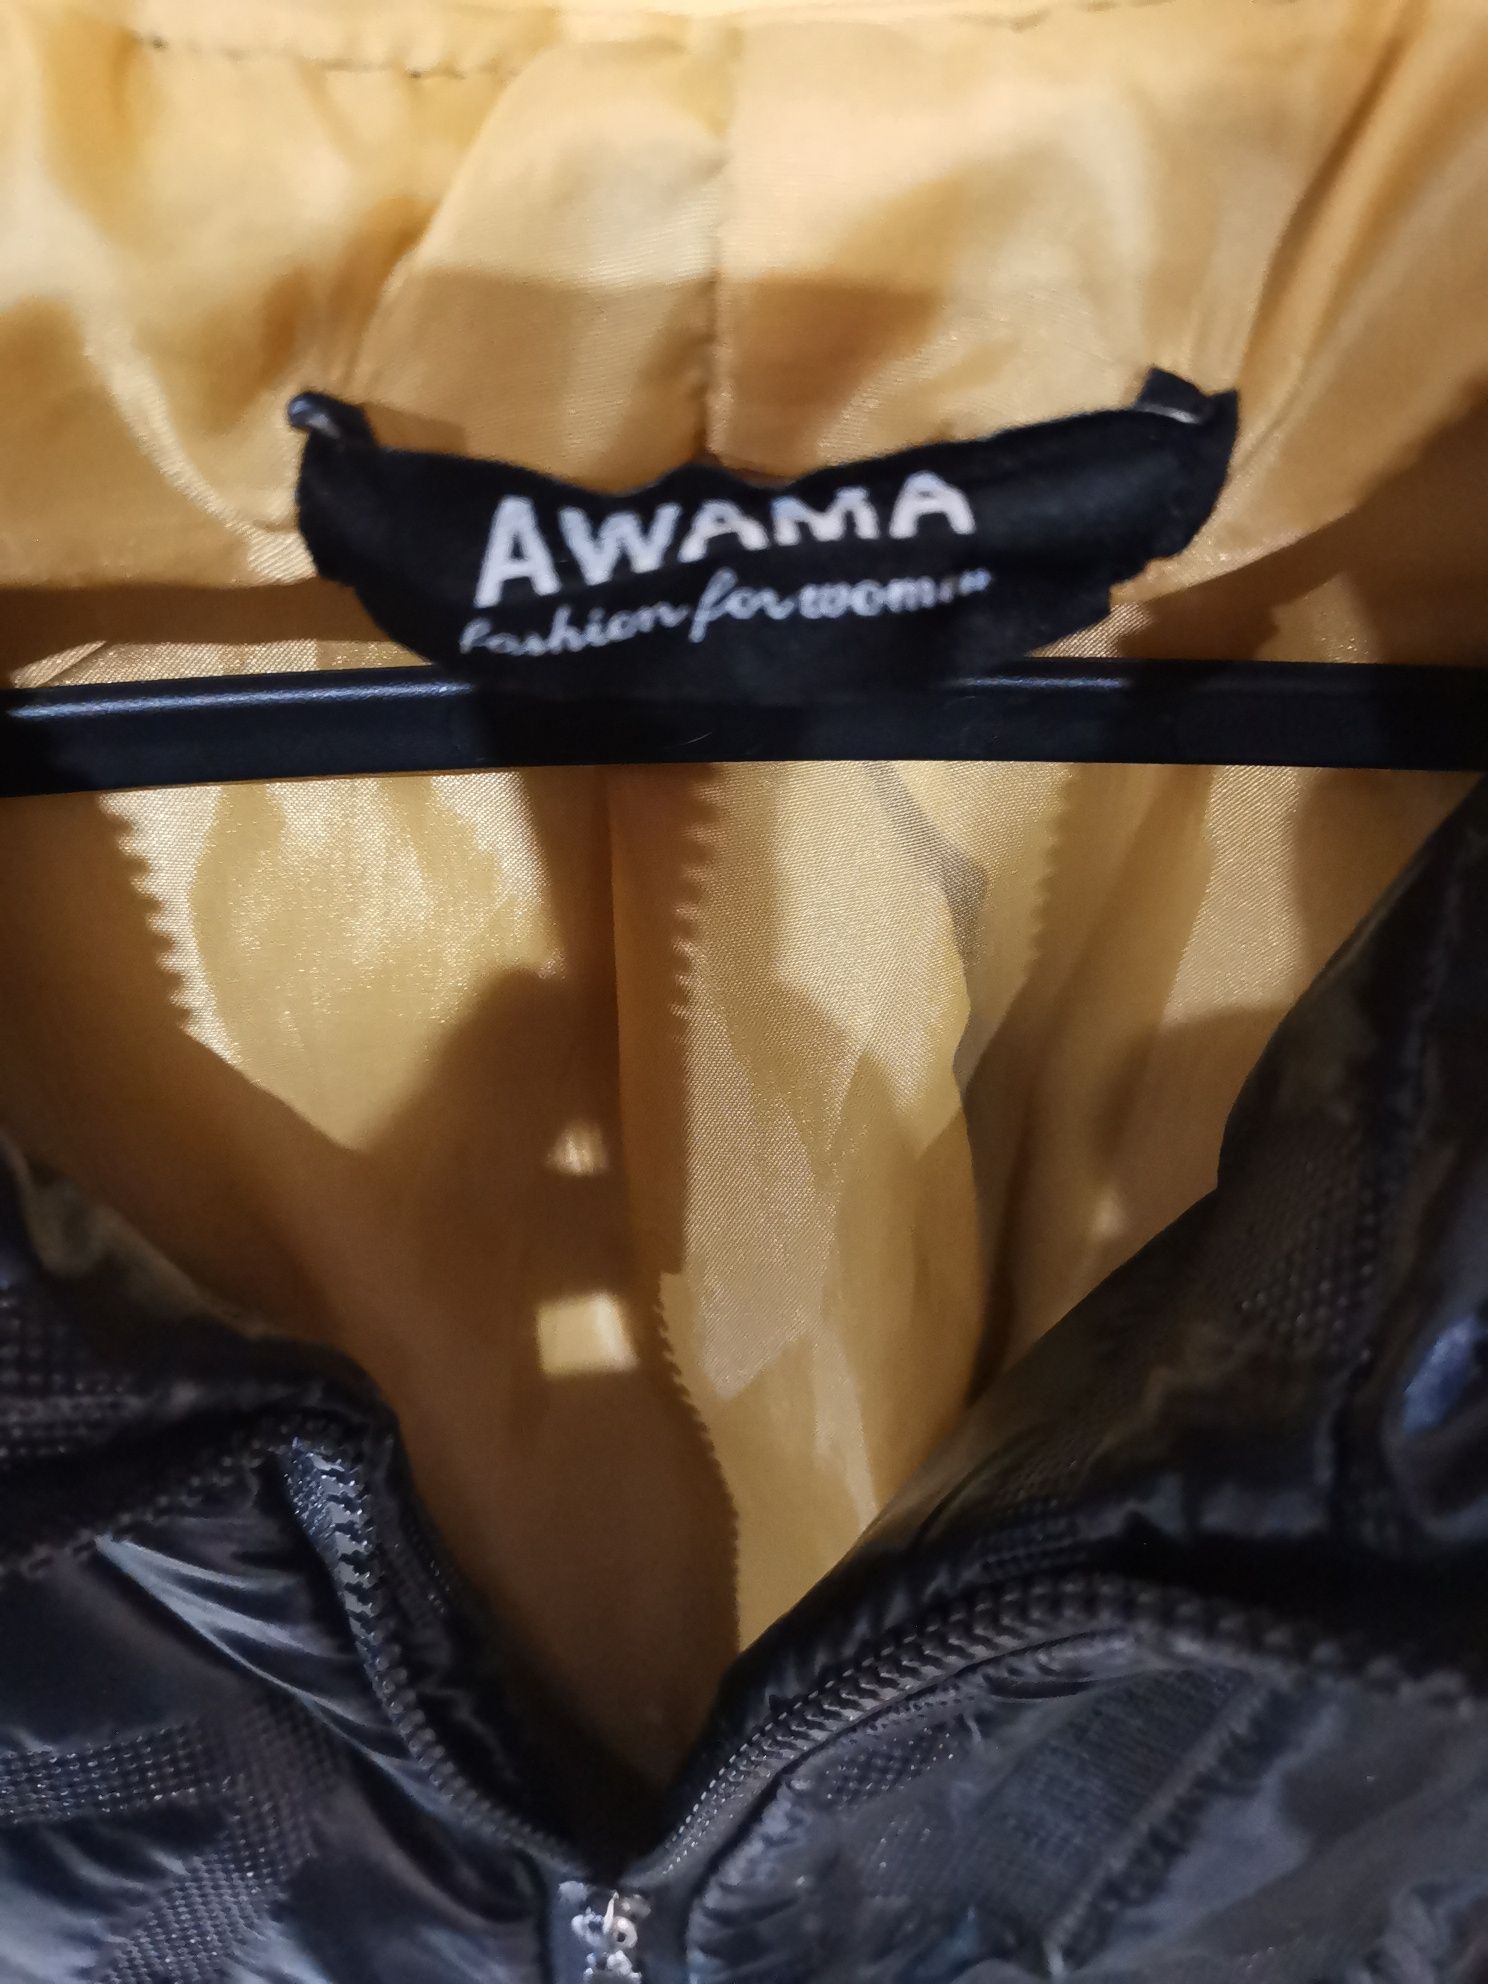 Płaszcz czarny metaliczny wzory AWAMA rozmiar M /L